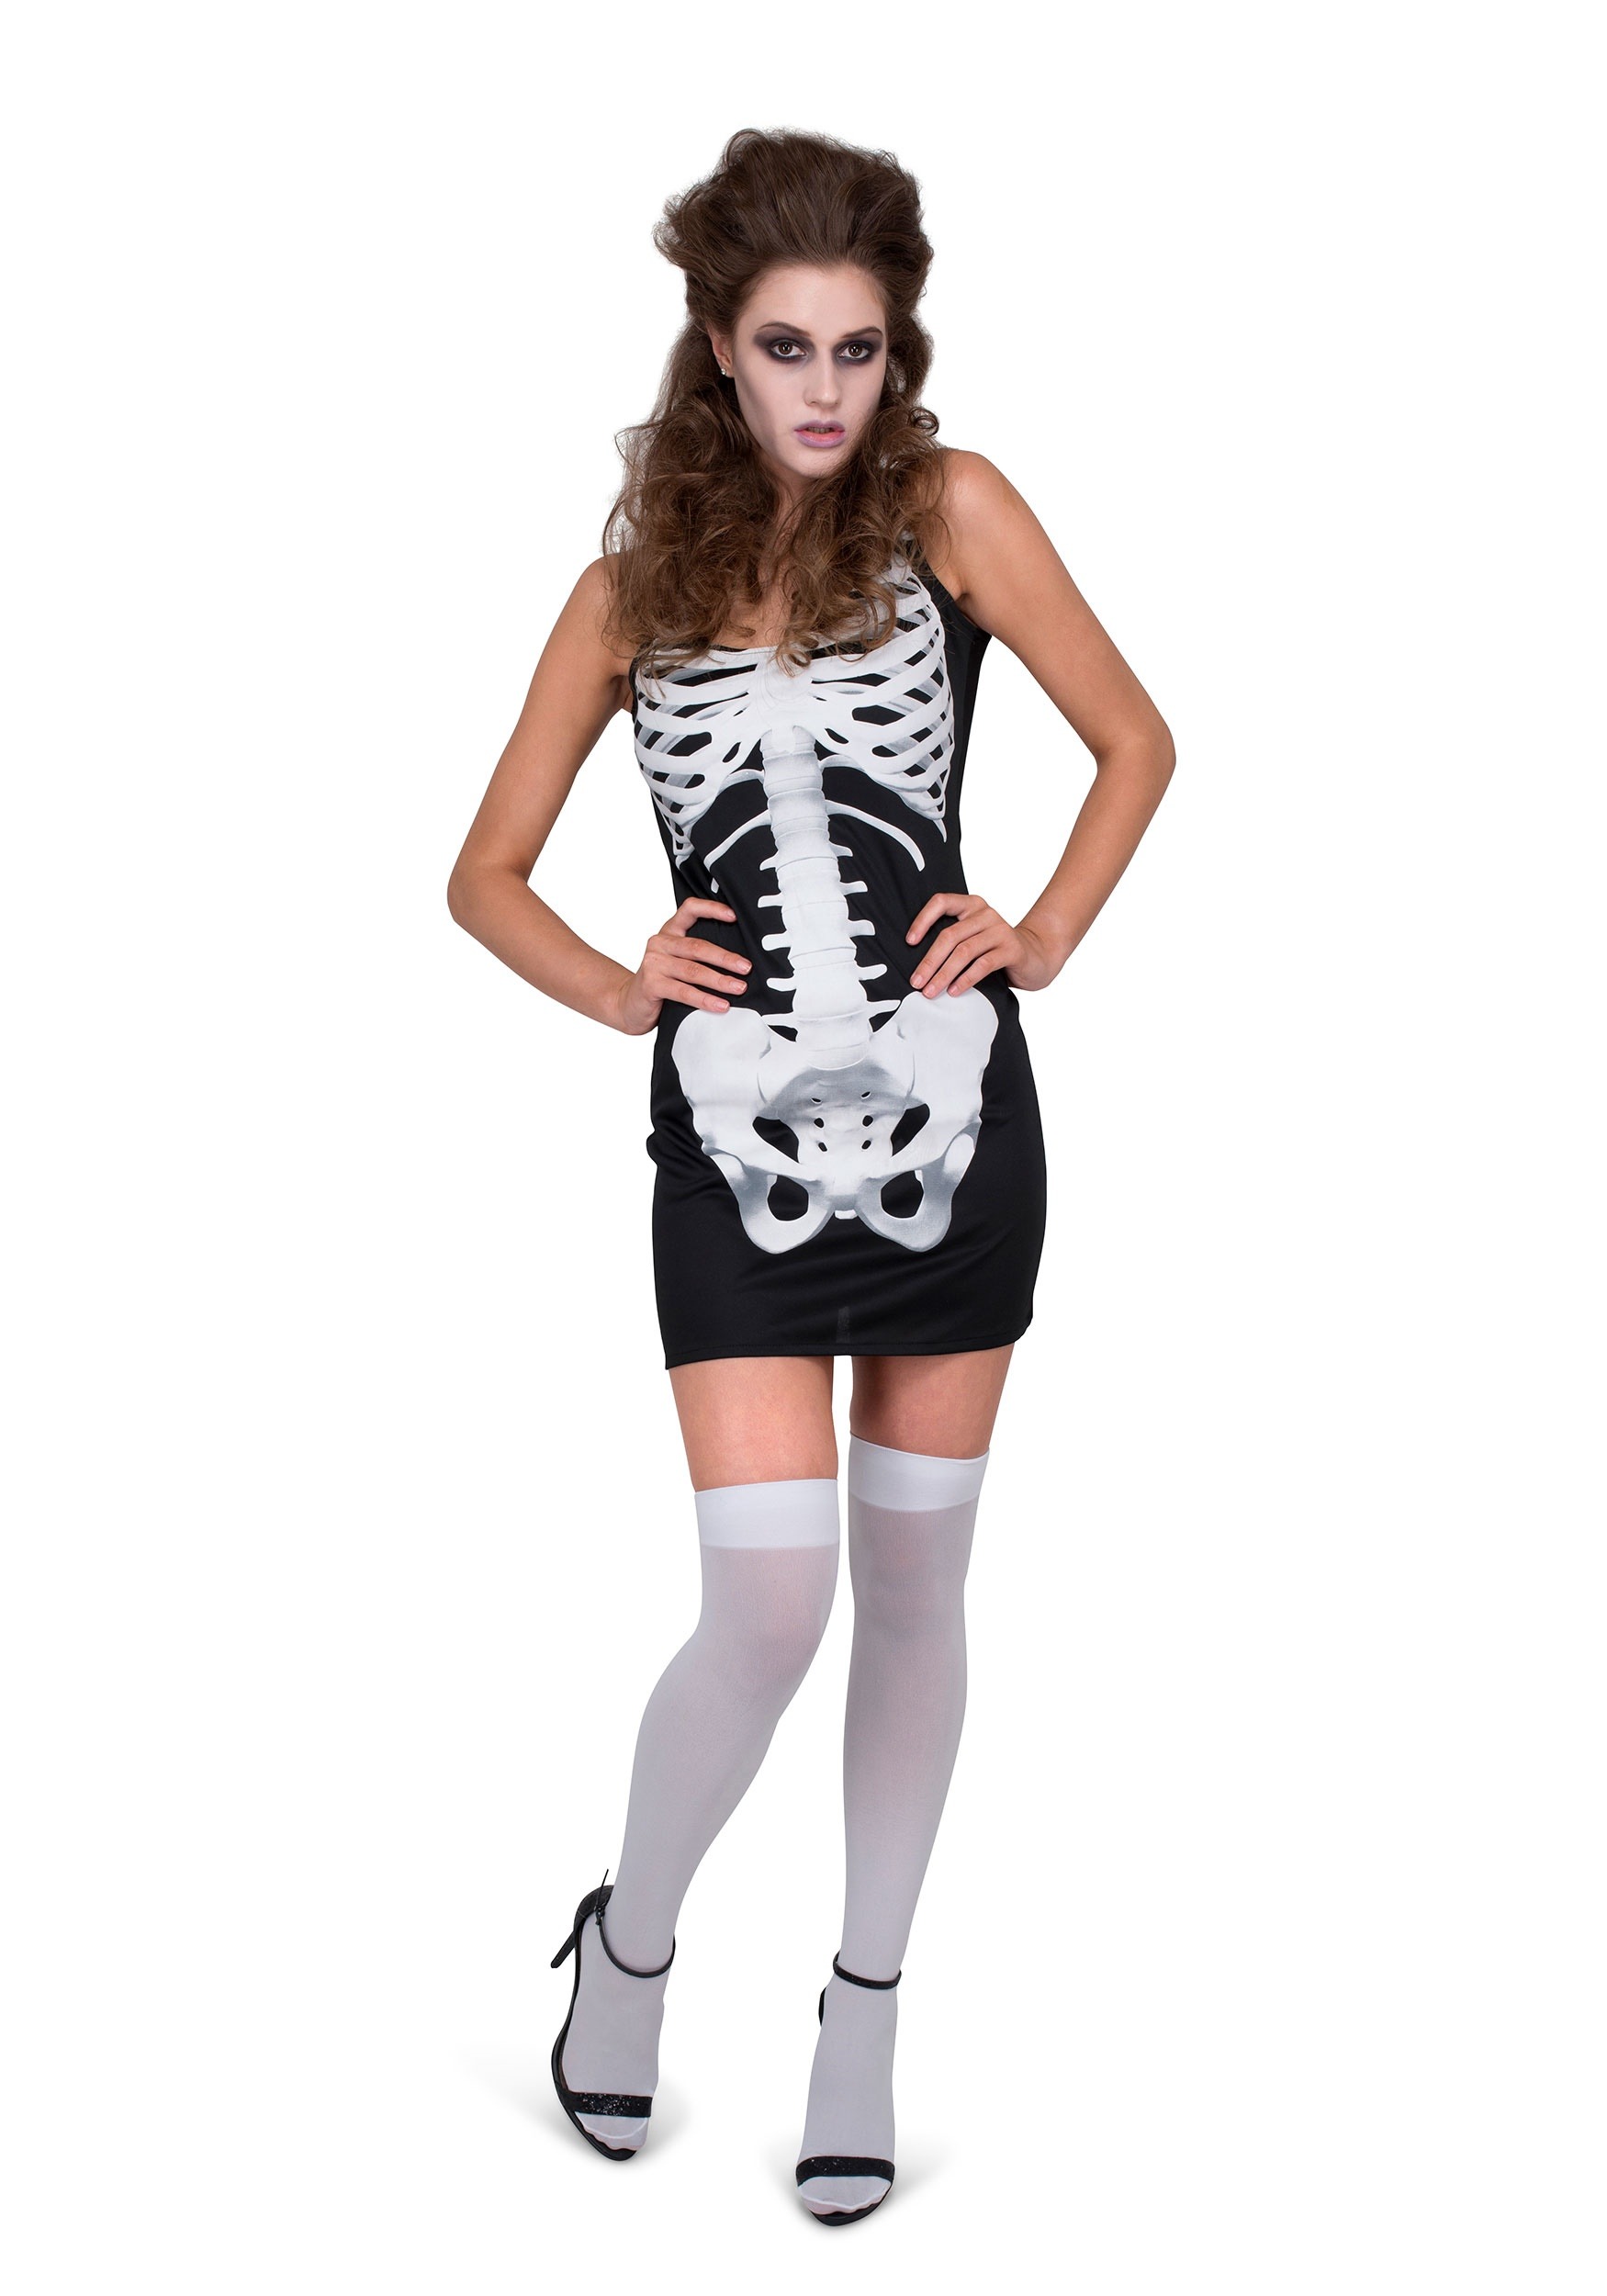 Photos - Fancy Dress Winsun Dress Karnival Costumes Skeleton Dress Costume for Women Black/White 